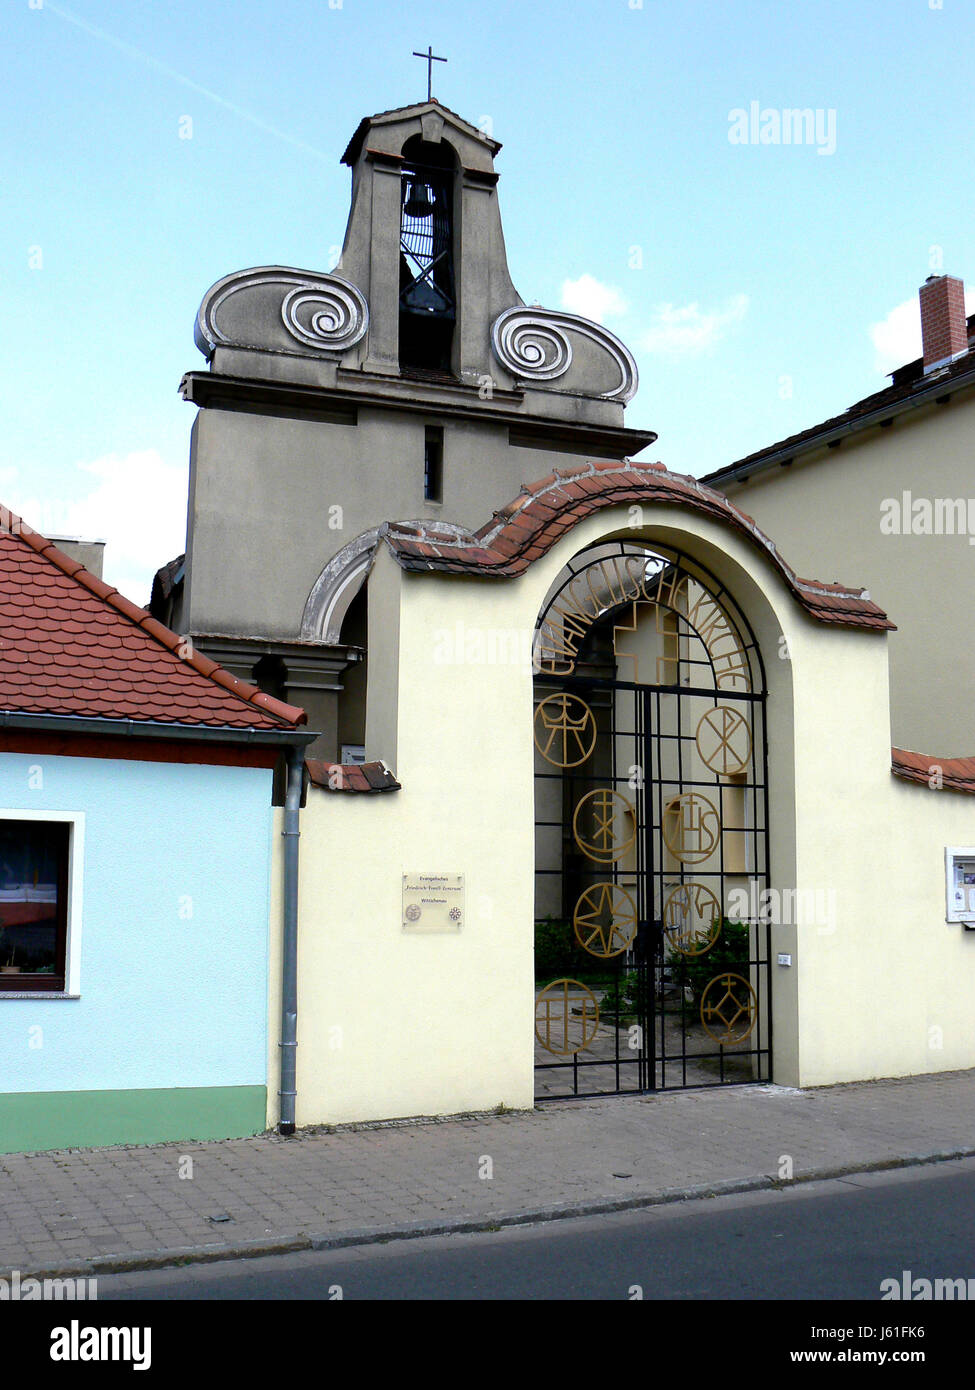 Glockenturm der Kirche blau evangelisch evangelische Religion religiöse Kirche Himmel Stockfoto